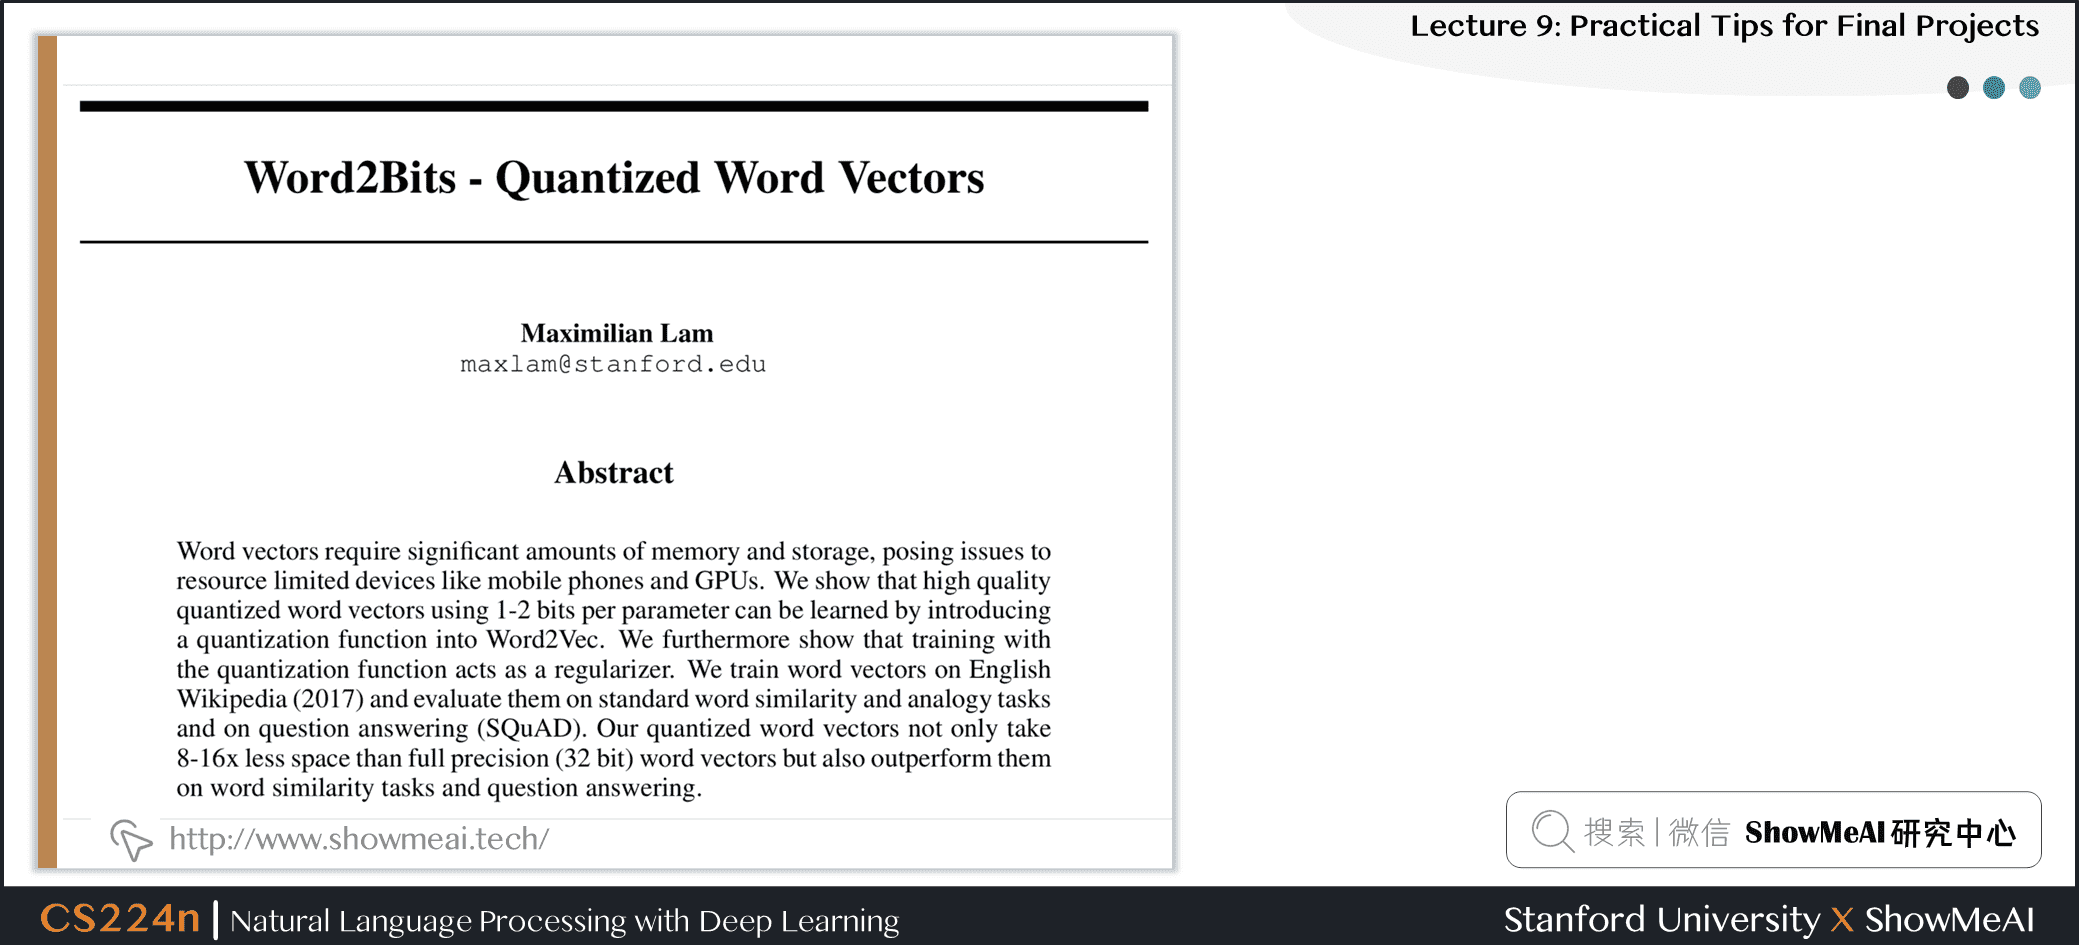 Word2bits - Quantized Word Vectors